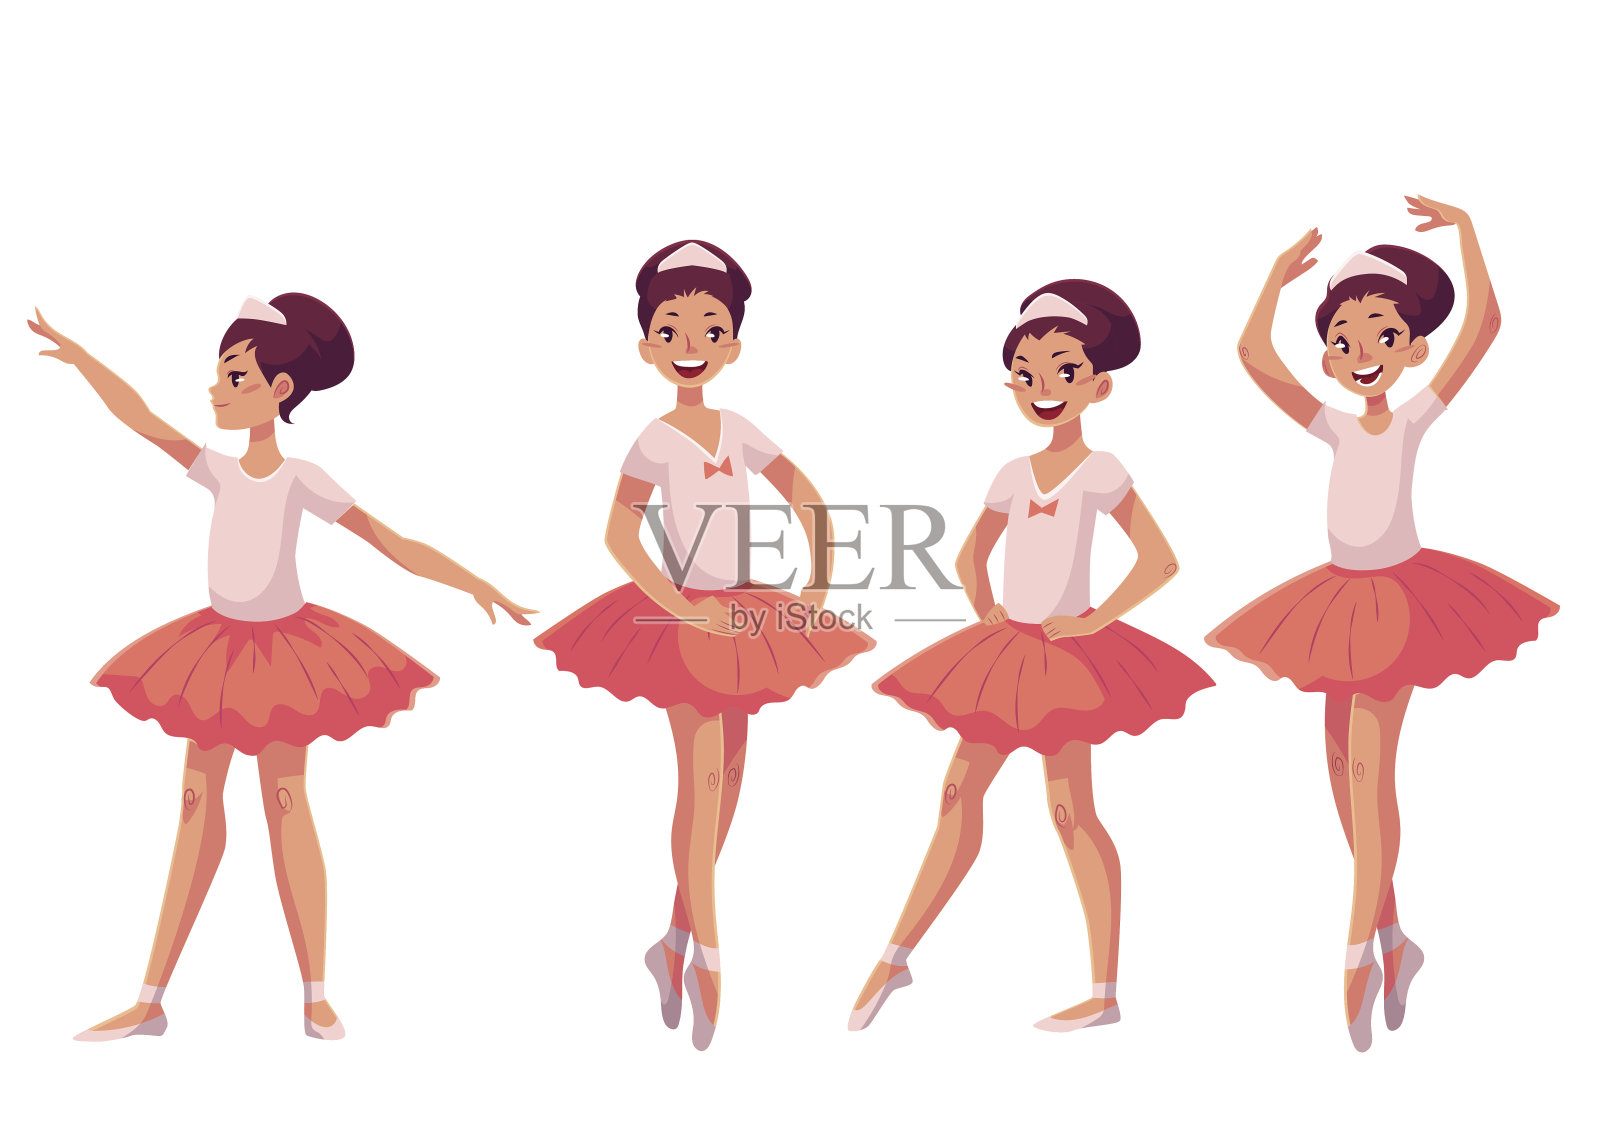 一组穿着粉红色芭蕾舞裙的优雅漂亮的年轻芭蕾舞者插画图片素材